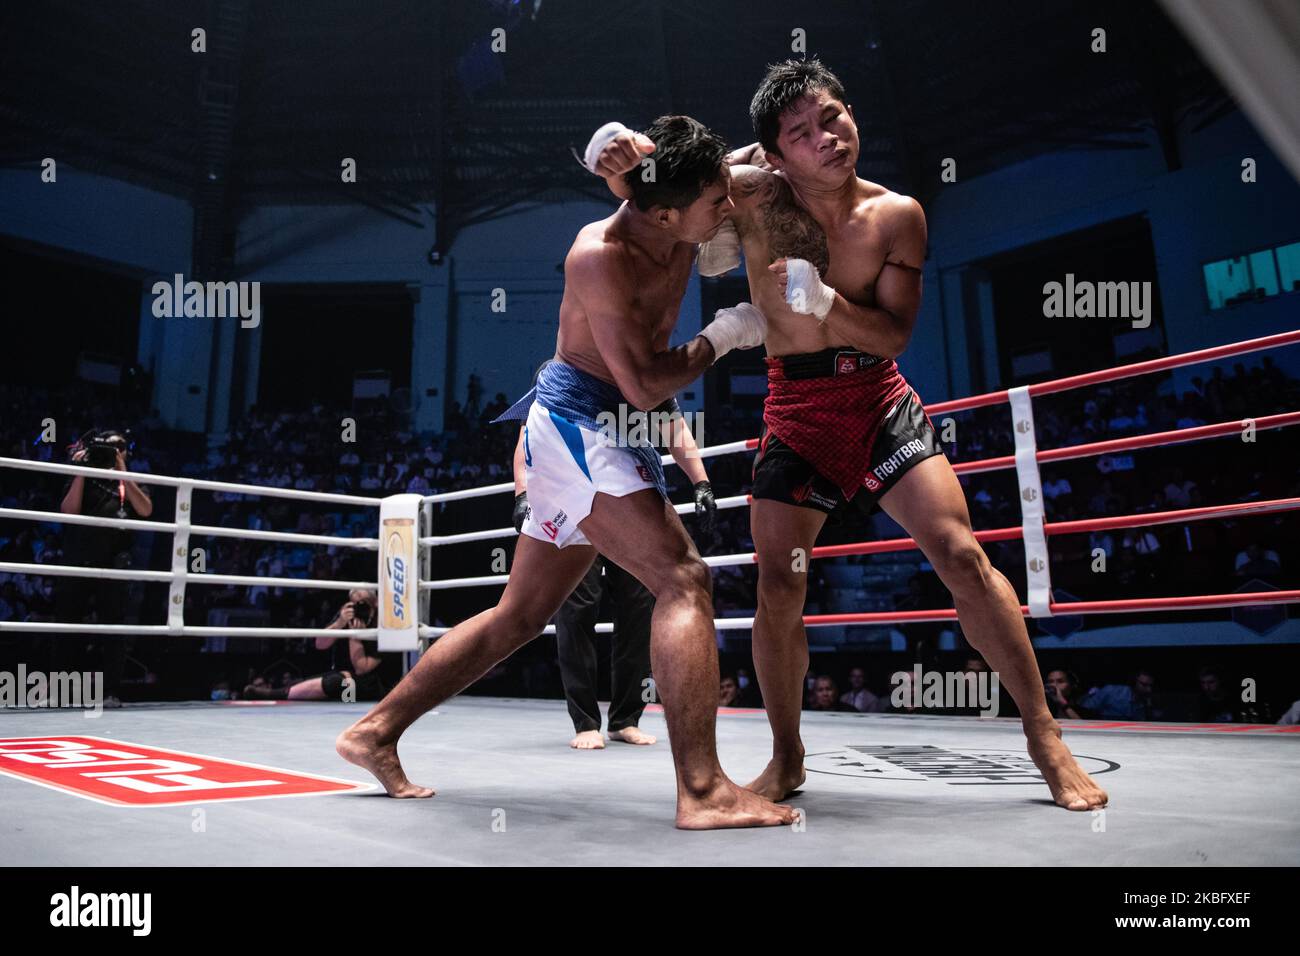 Hein tun Aung aus Myanmar (R) kämpft während der Lethwei-Weltmeisterschaft in Yangon, Myanmar, am 31. Januar 2020 gegen EM Sothy aus Kambodscha (L). (Foto von Shwe Paw Mya Tin/NurPhoto) Stockfoto